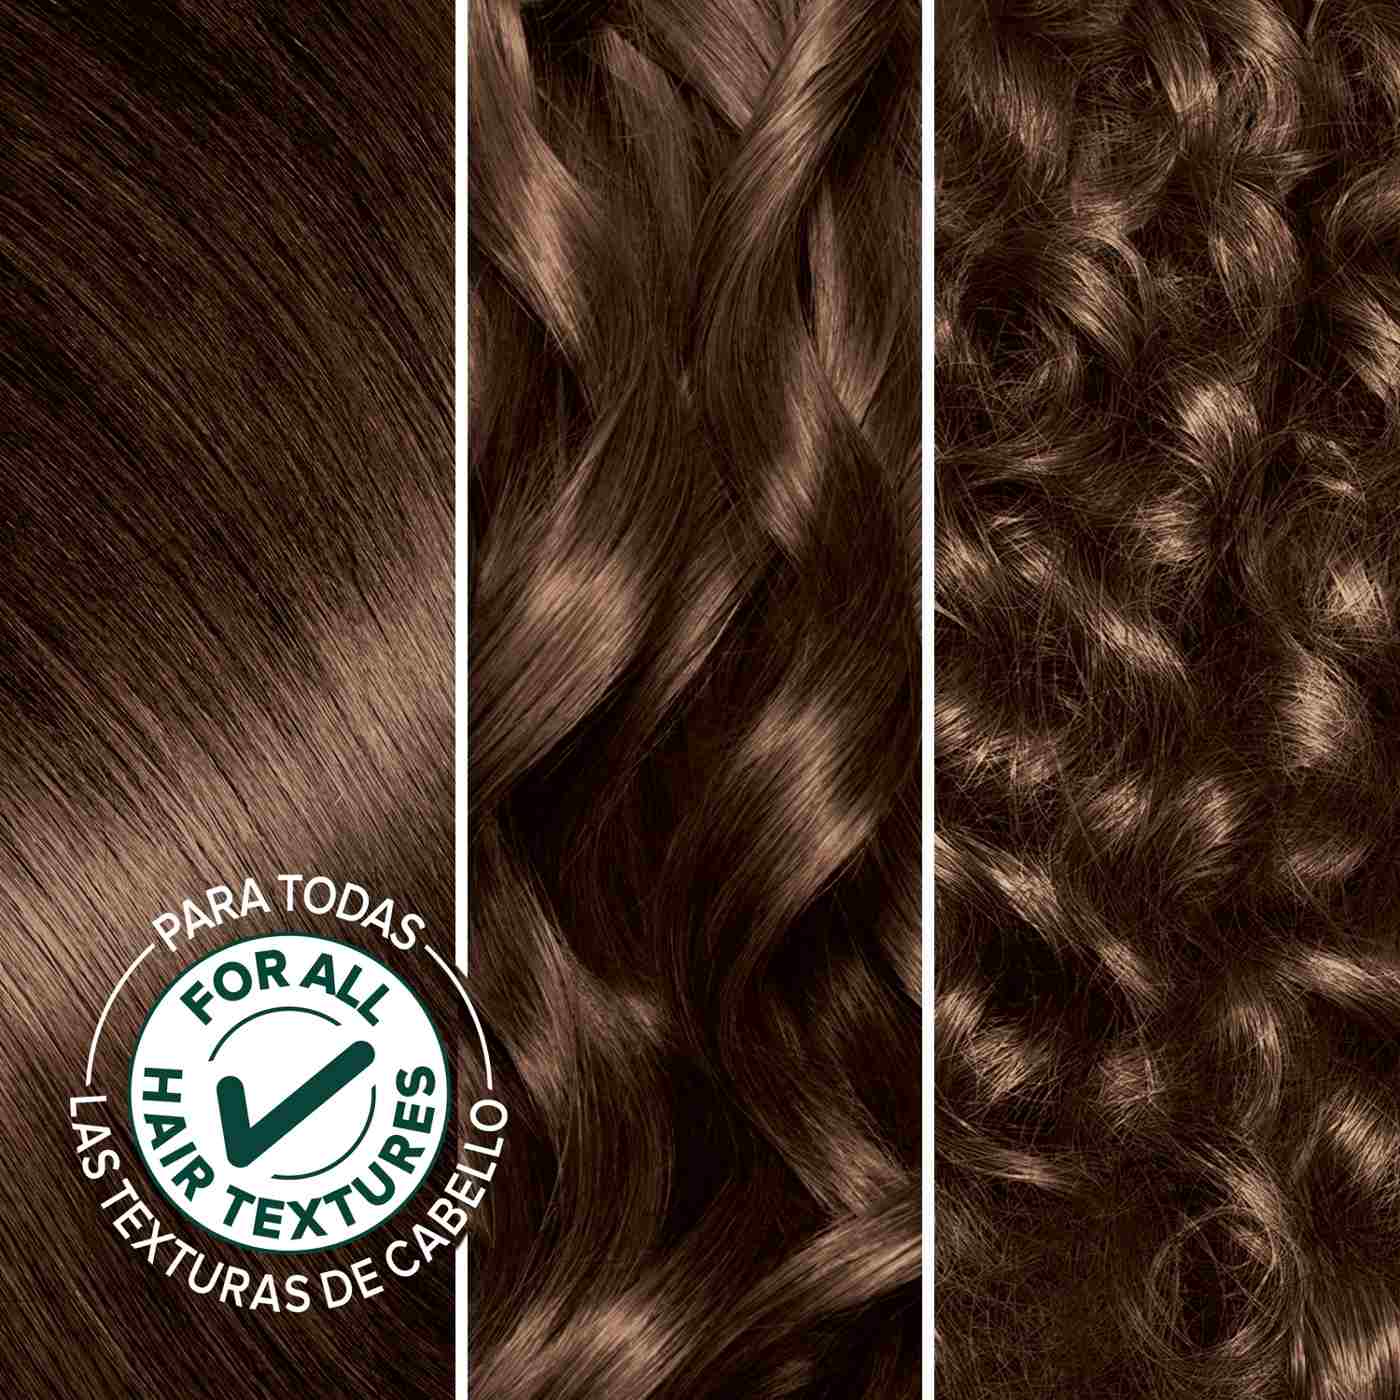 Garnier Nutrisse Nourishing Hair Color Creme - 51 Medium Ash Brown; image 3 of 10